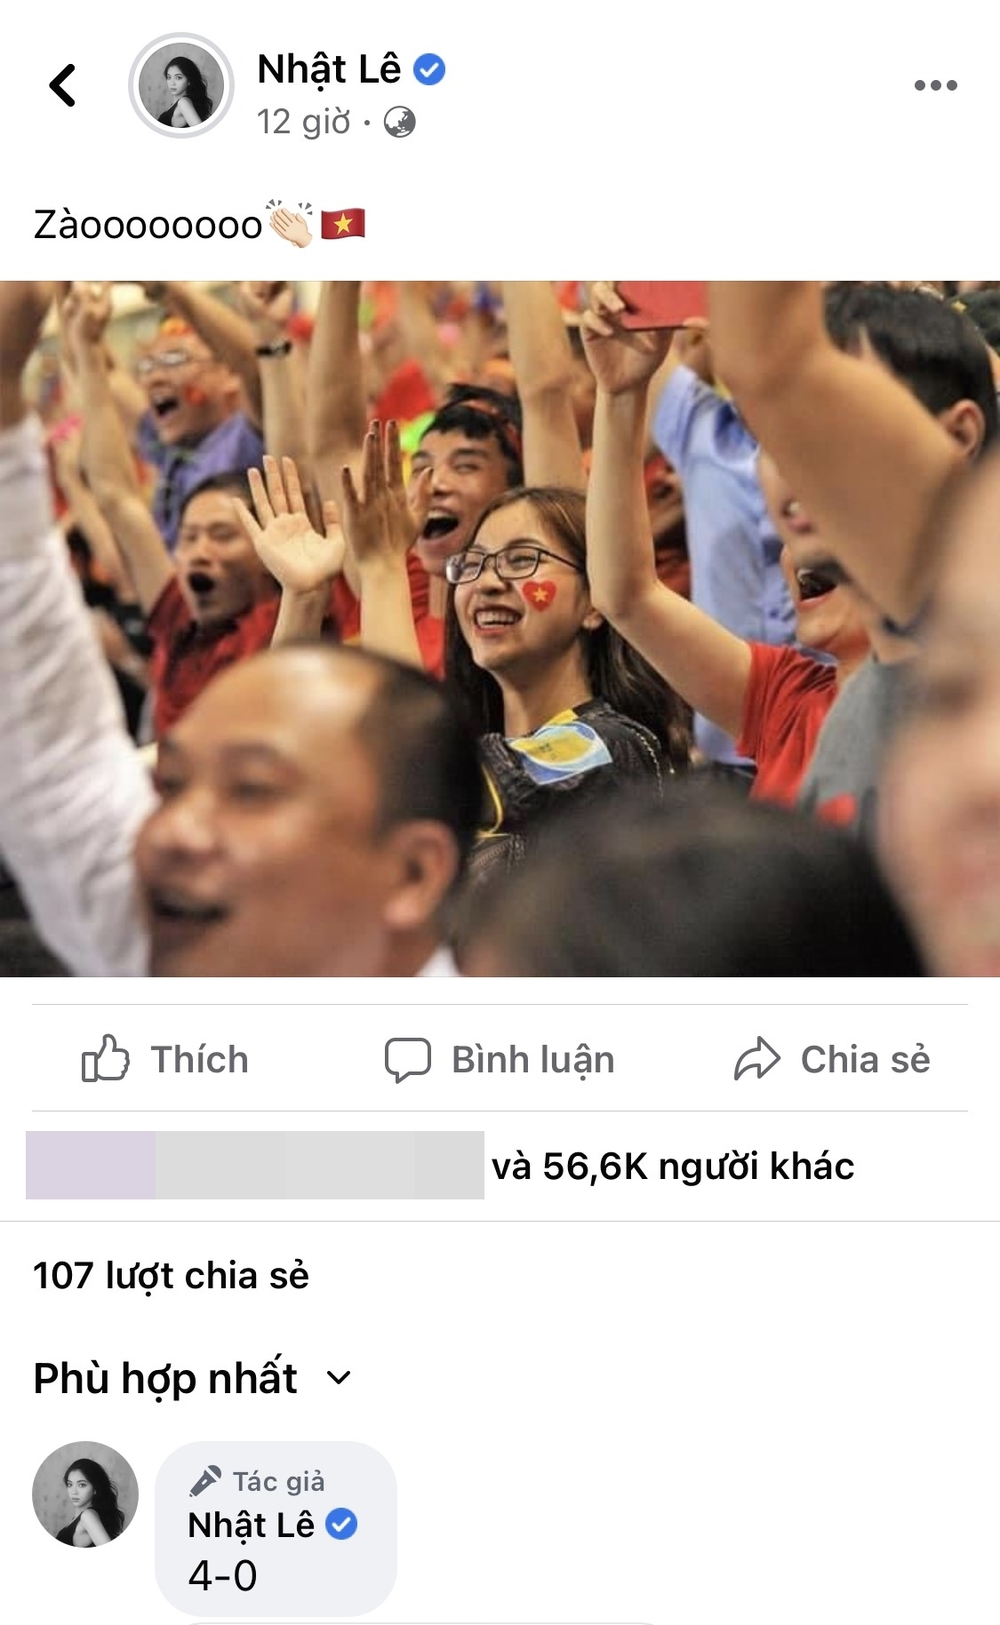  
Nhật Lê cập nhật trạng thái chúc mừng đội tuyển Việt Nam (Ảnh chụp màn hình)